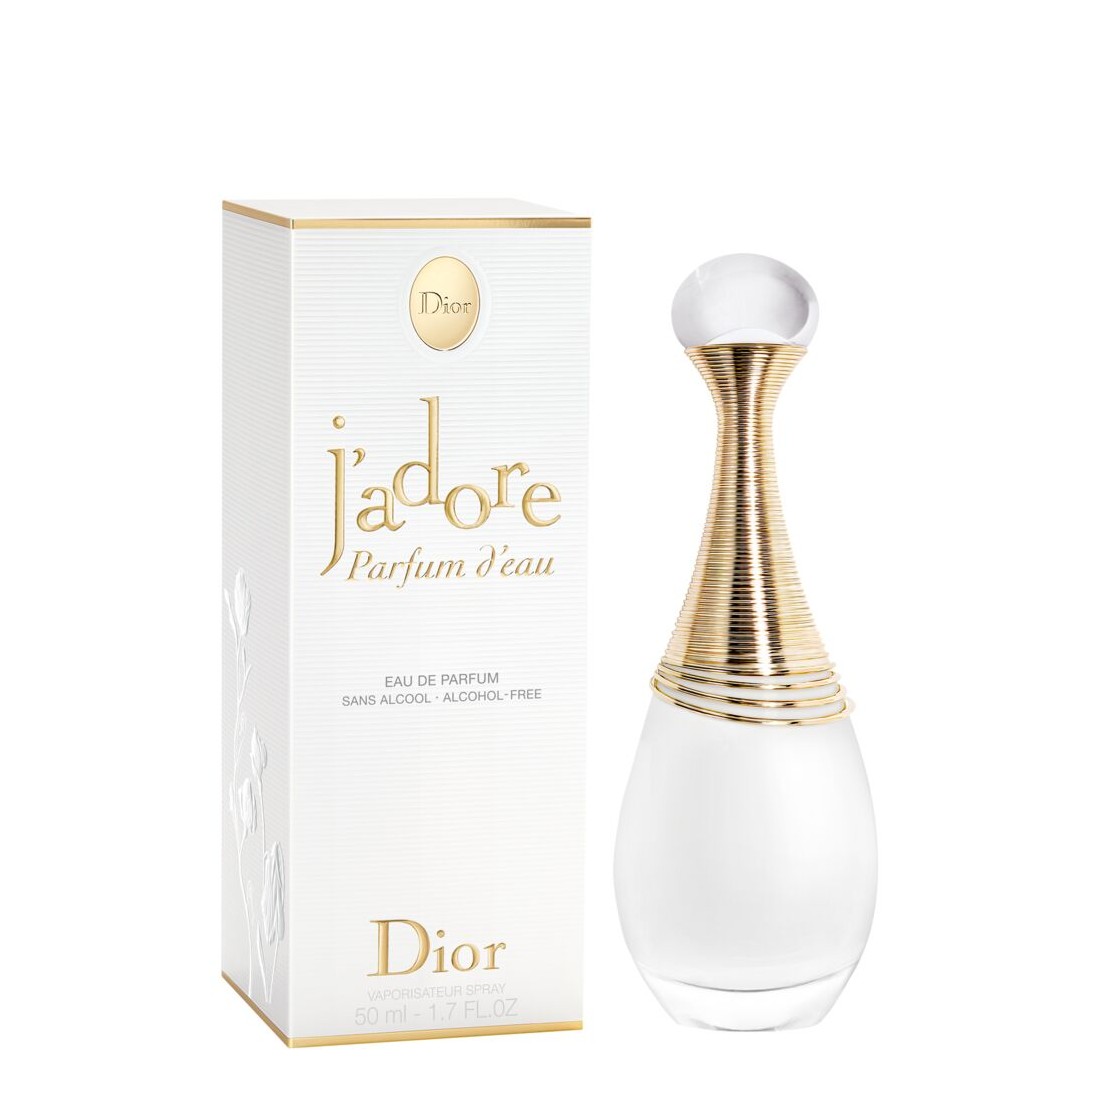 Image of Dior J'adore - Parfum d'eau - Eau de Parfum Profumo - 50 ml